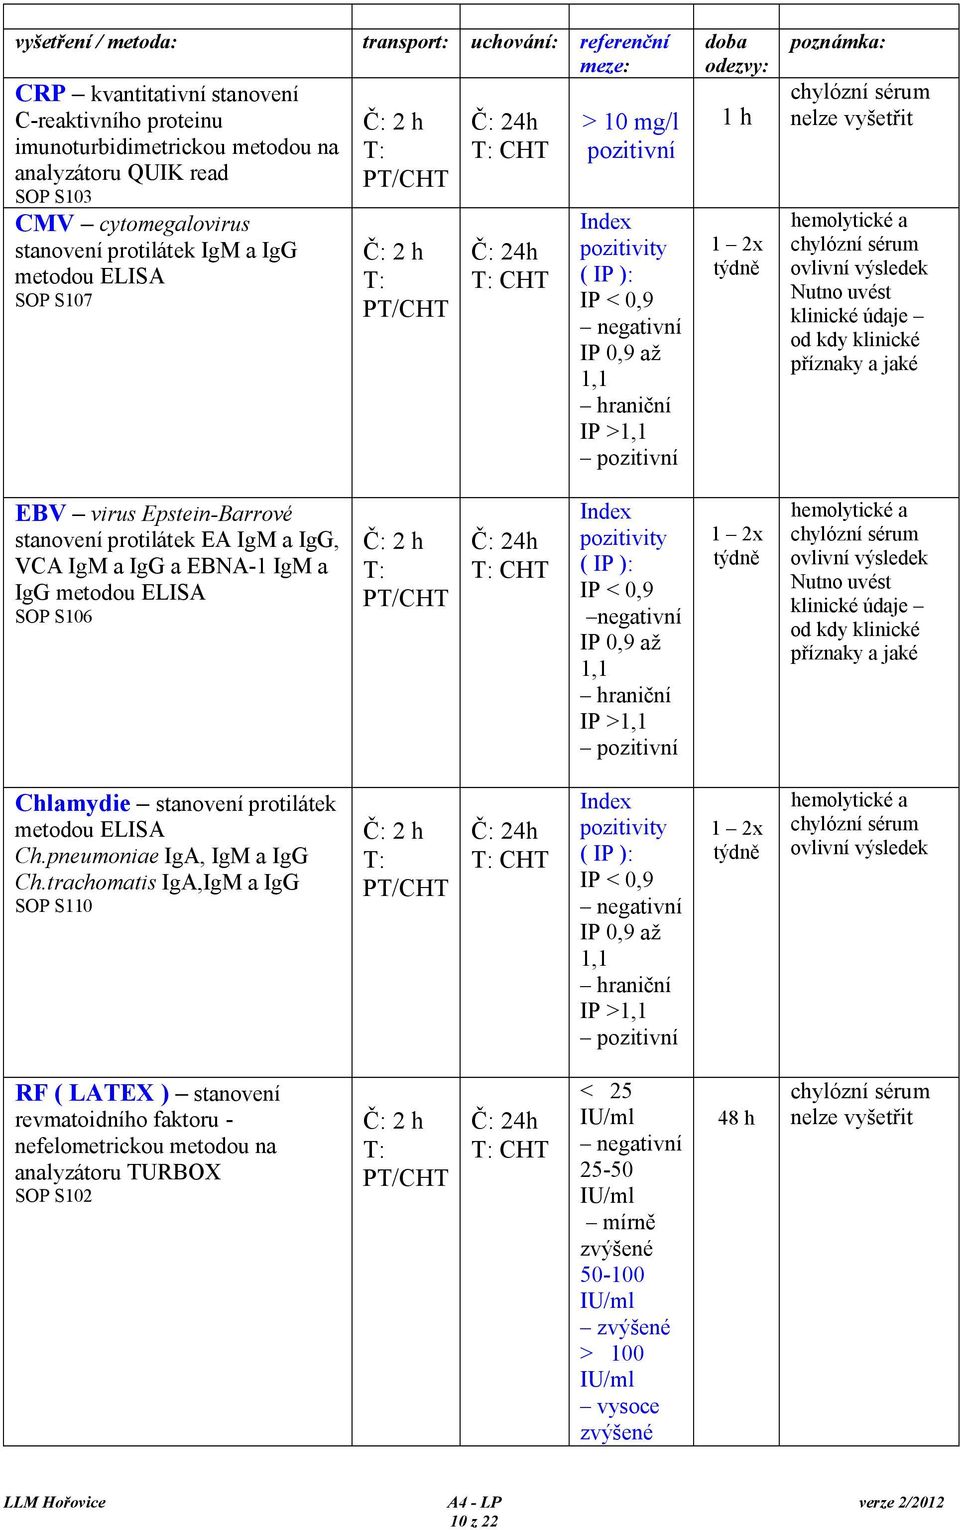 S106 2 h 24h CHT /CHT Chlamydie stanovení protilátek metodou ELISA Ch.pneumoniae IgA, IgM a IgG Ch.